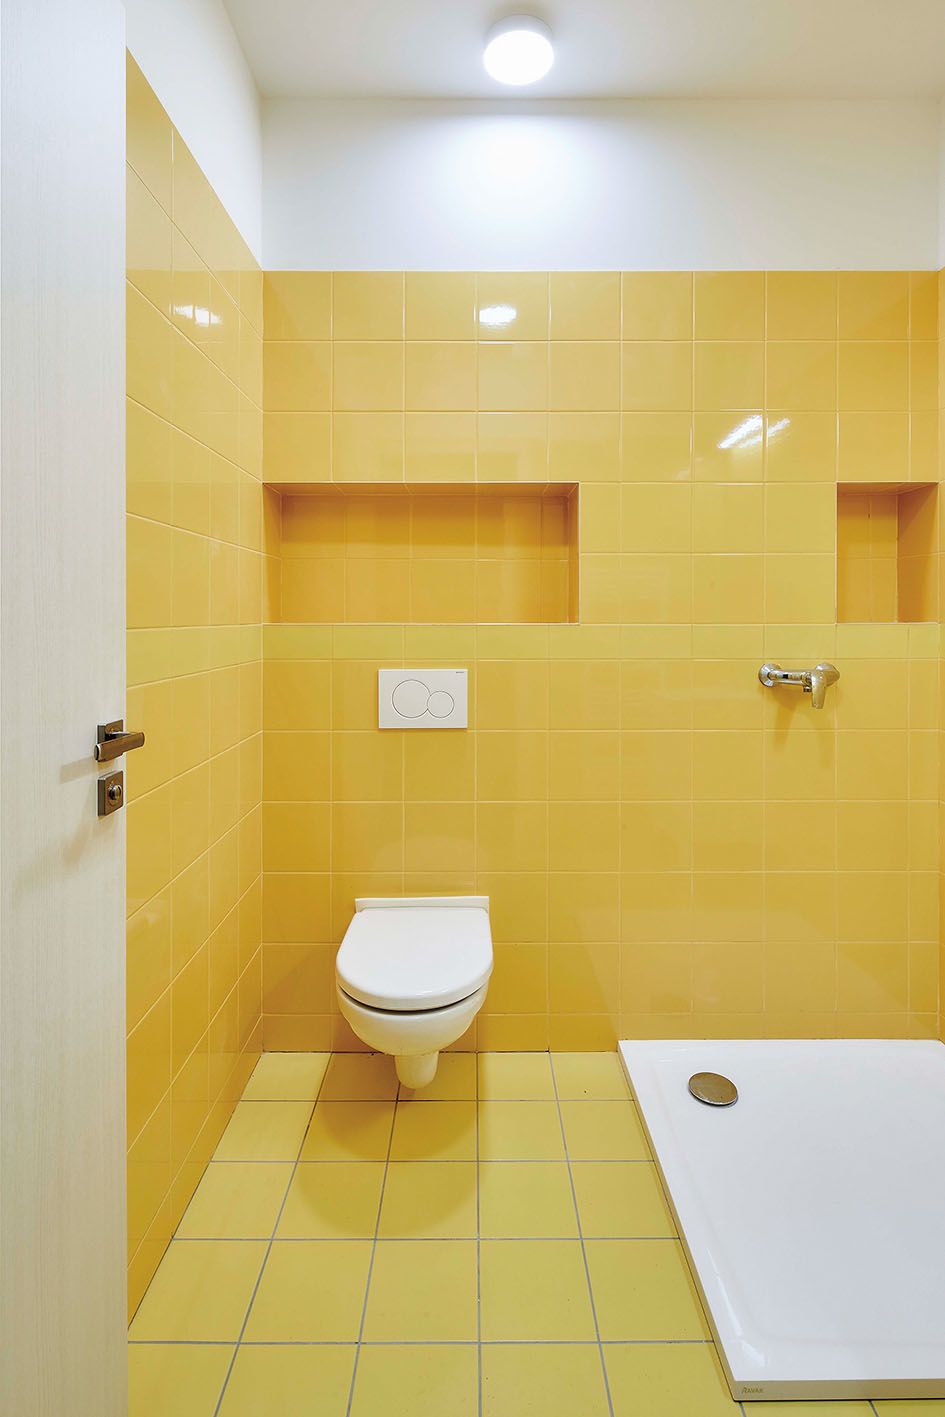 Niky v koupelně lze obložit a využít je na ukládání hygienických potřeb.